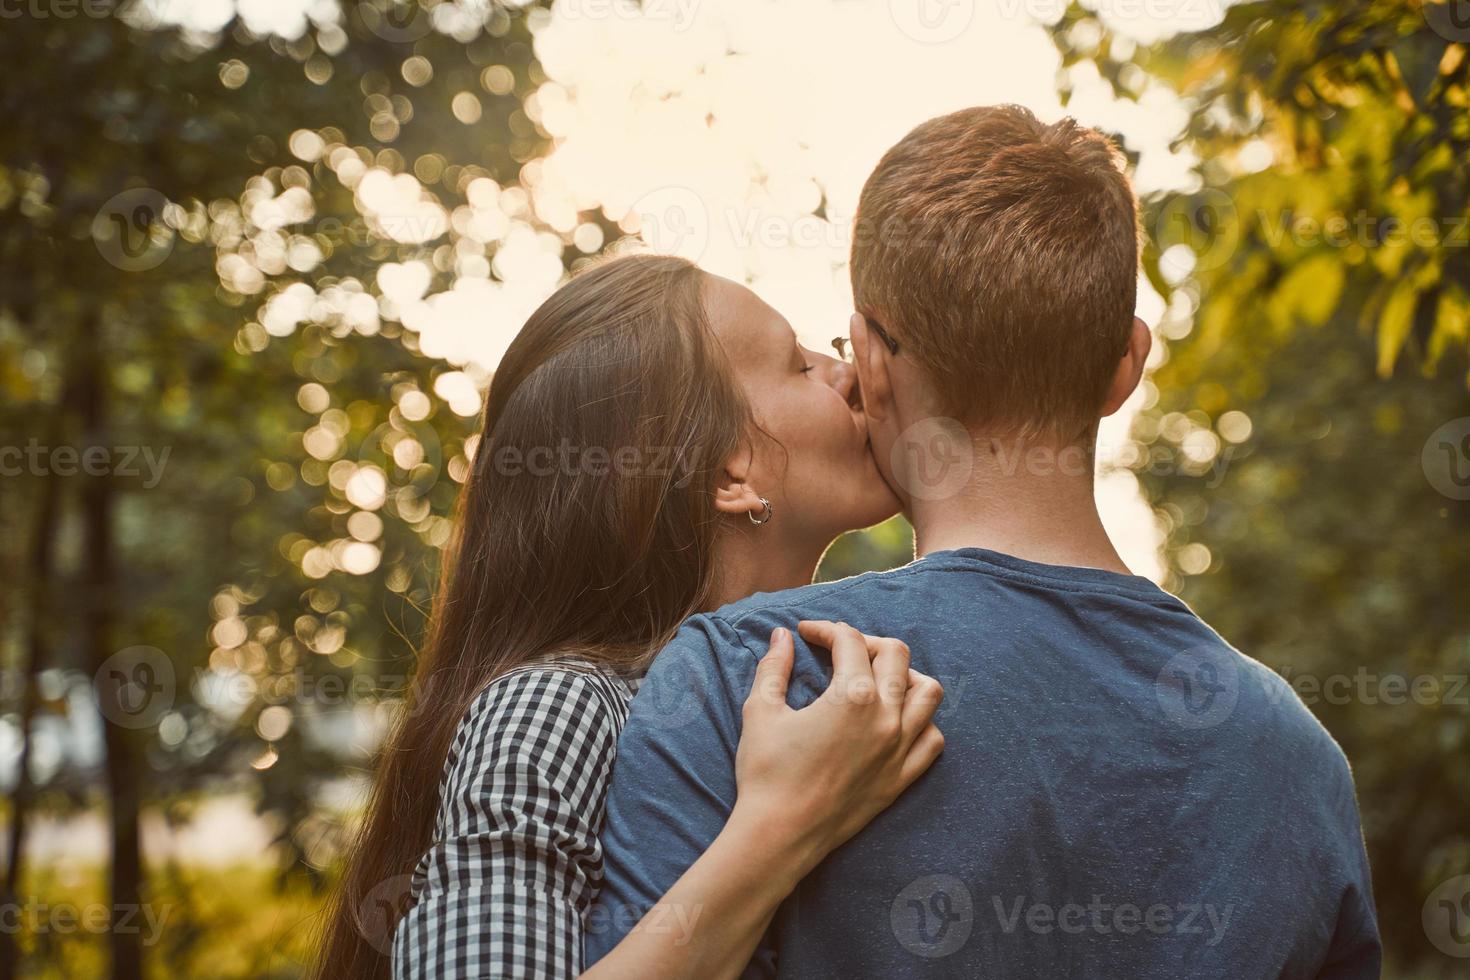 chica besando a chico en la mejilla en el parque, concepto de amor adolescente foto